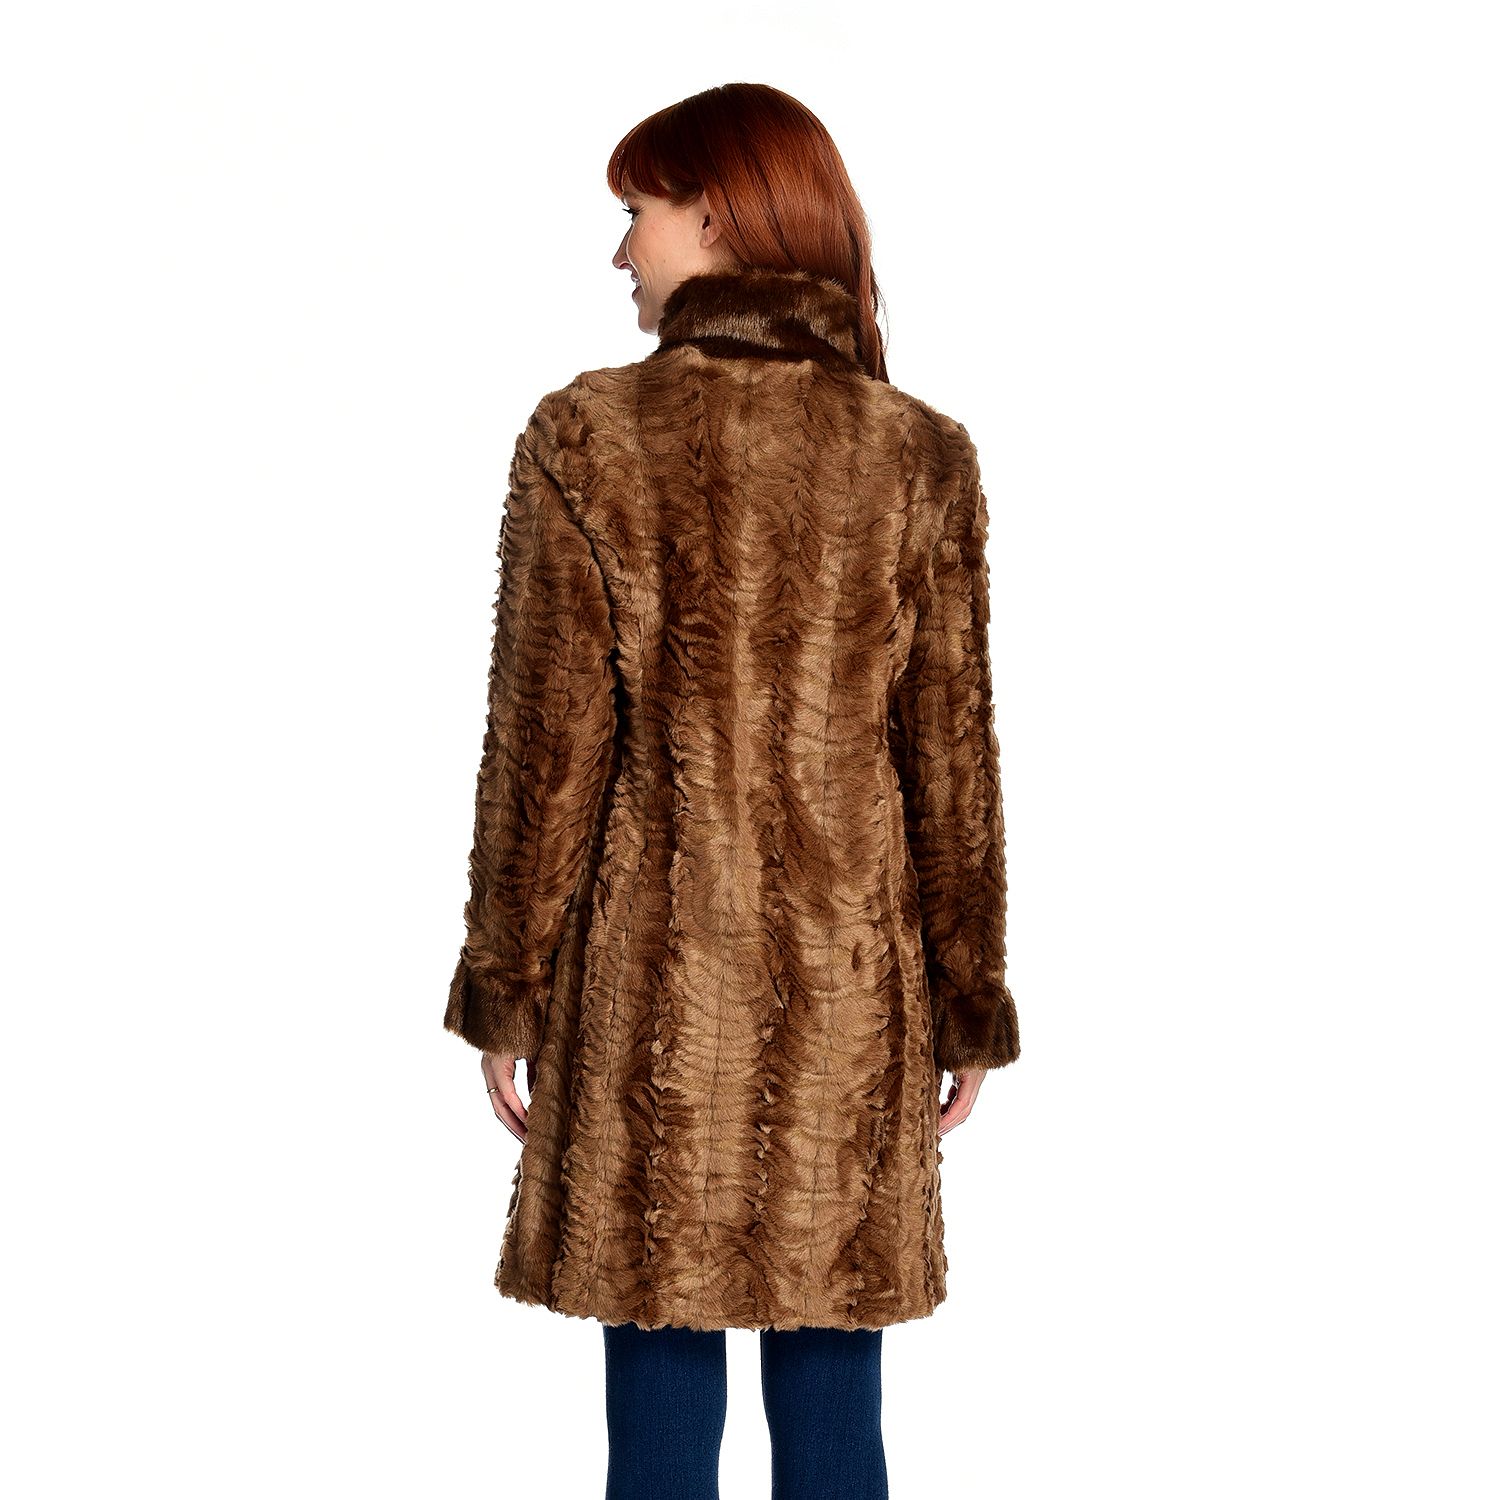 (ShopHQ) Donna Salyers' Fabulous-Furs Faux Fur Cascade Front Broadtail